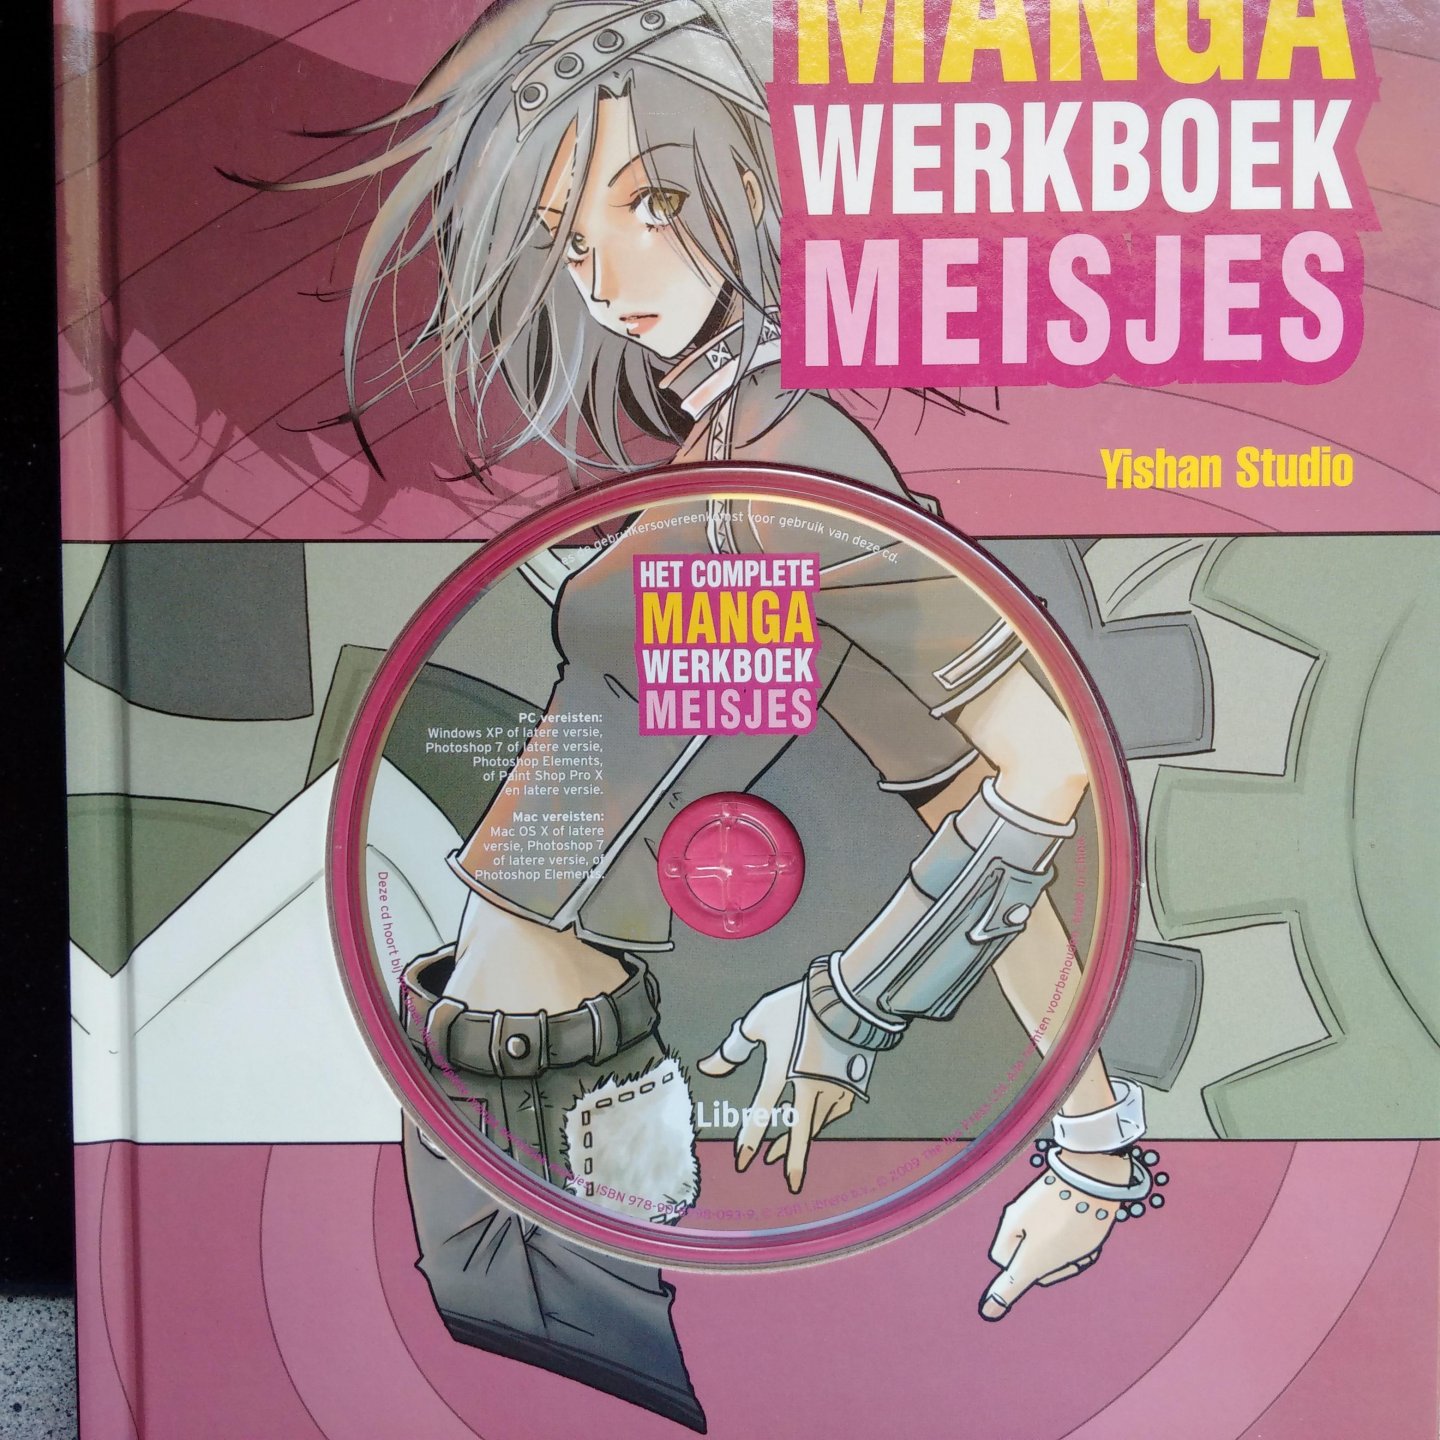 Yishan Studio & James, Andrew - Het complete manga werkboek meisjes